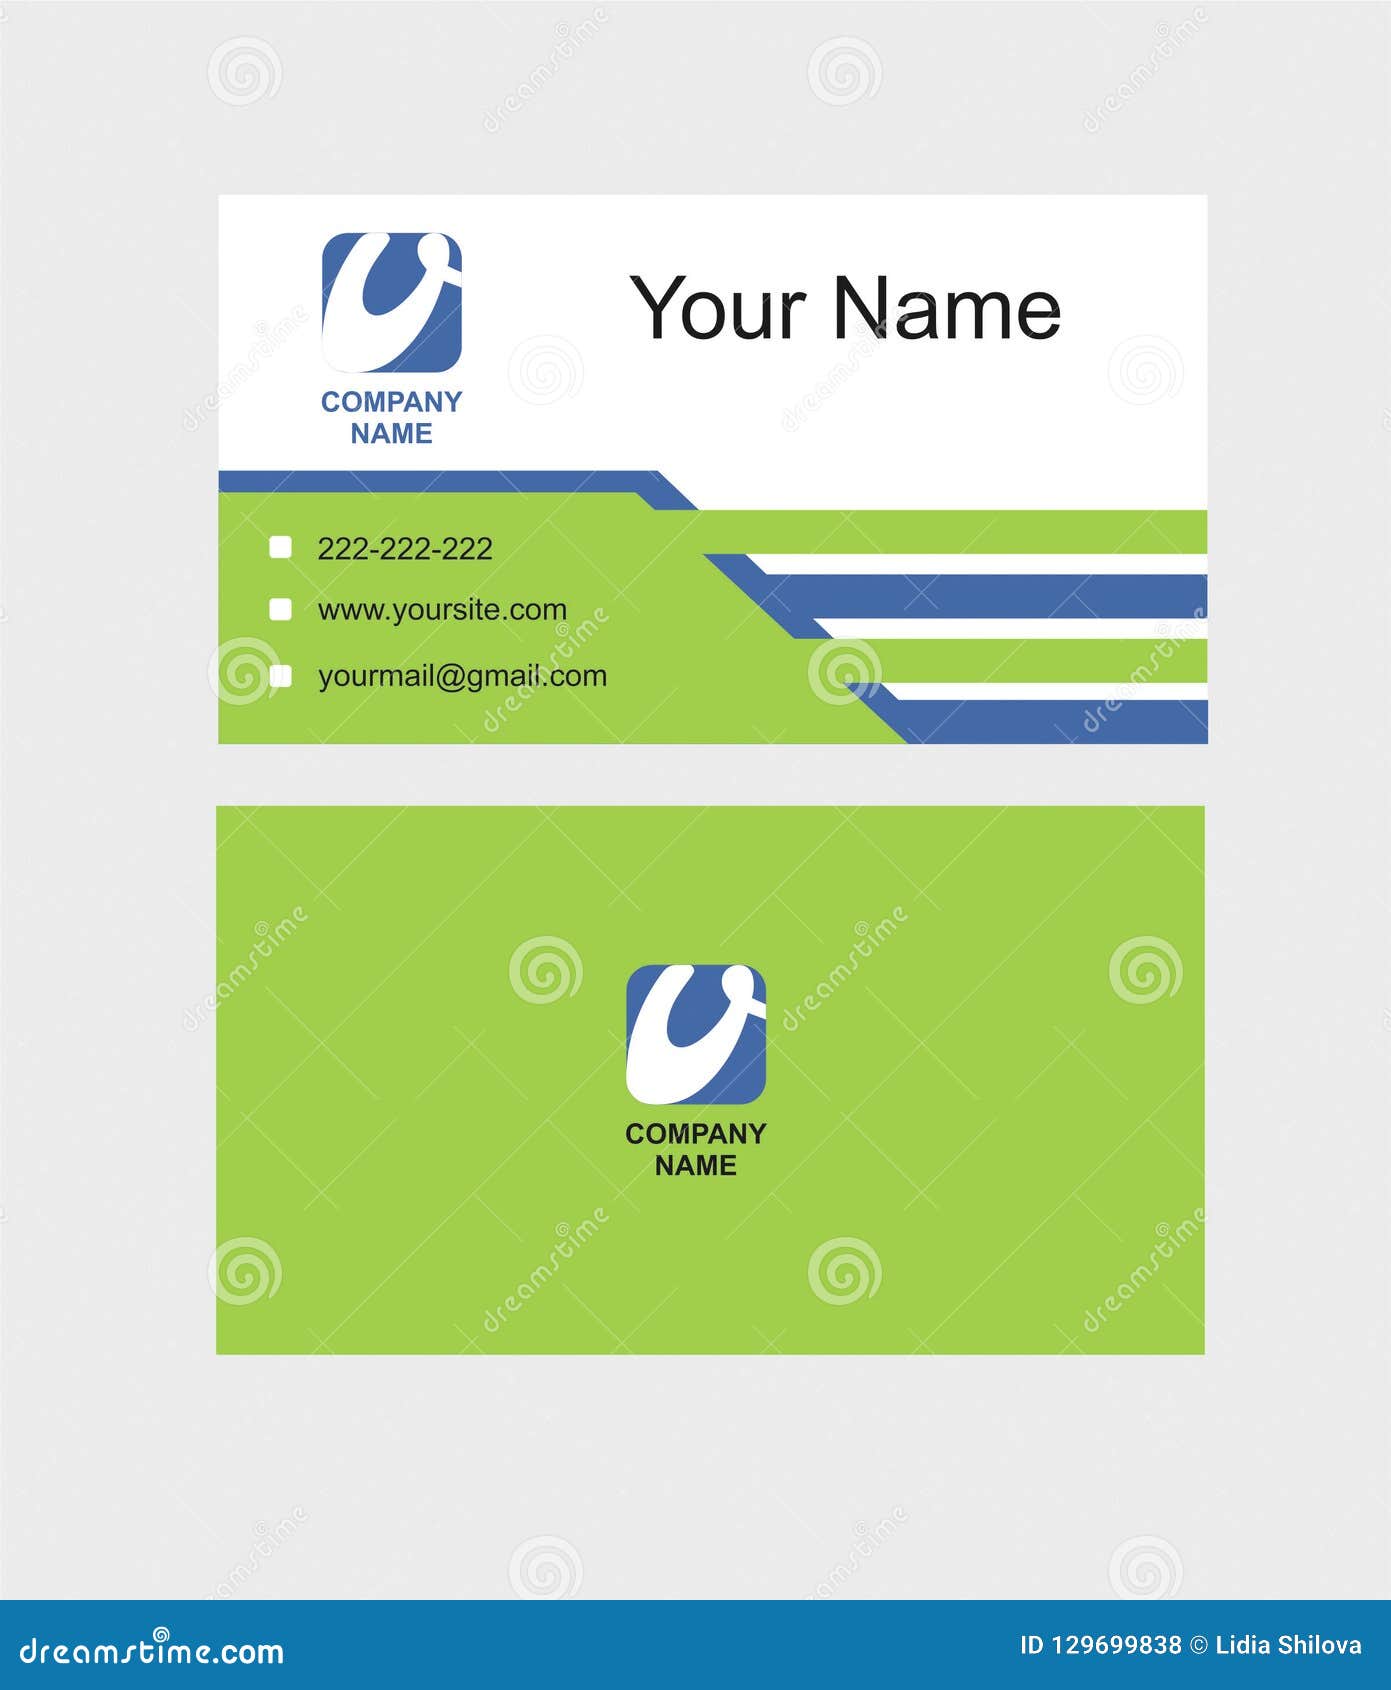 Cho dù bạn làm việc ở bất kỳ lĩnh vực nào, một mẫu thiết kế card visit đẹp sẽ giúp bạn tạo nên sự chuyên nghiệp và gây ấn tượng với đối tác của mình. Nhấp vào hình ảnh để xem mẫu thiết kế card visit phù hợp với bạn.